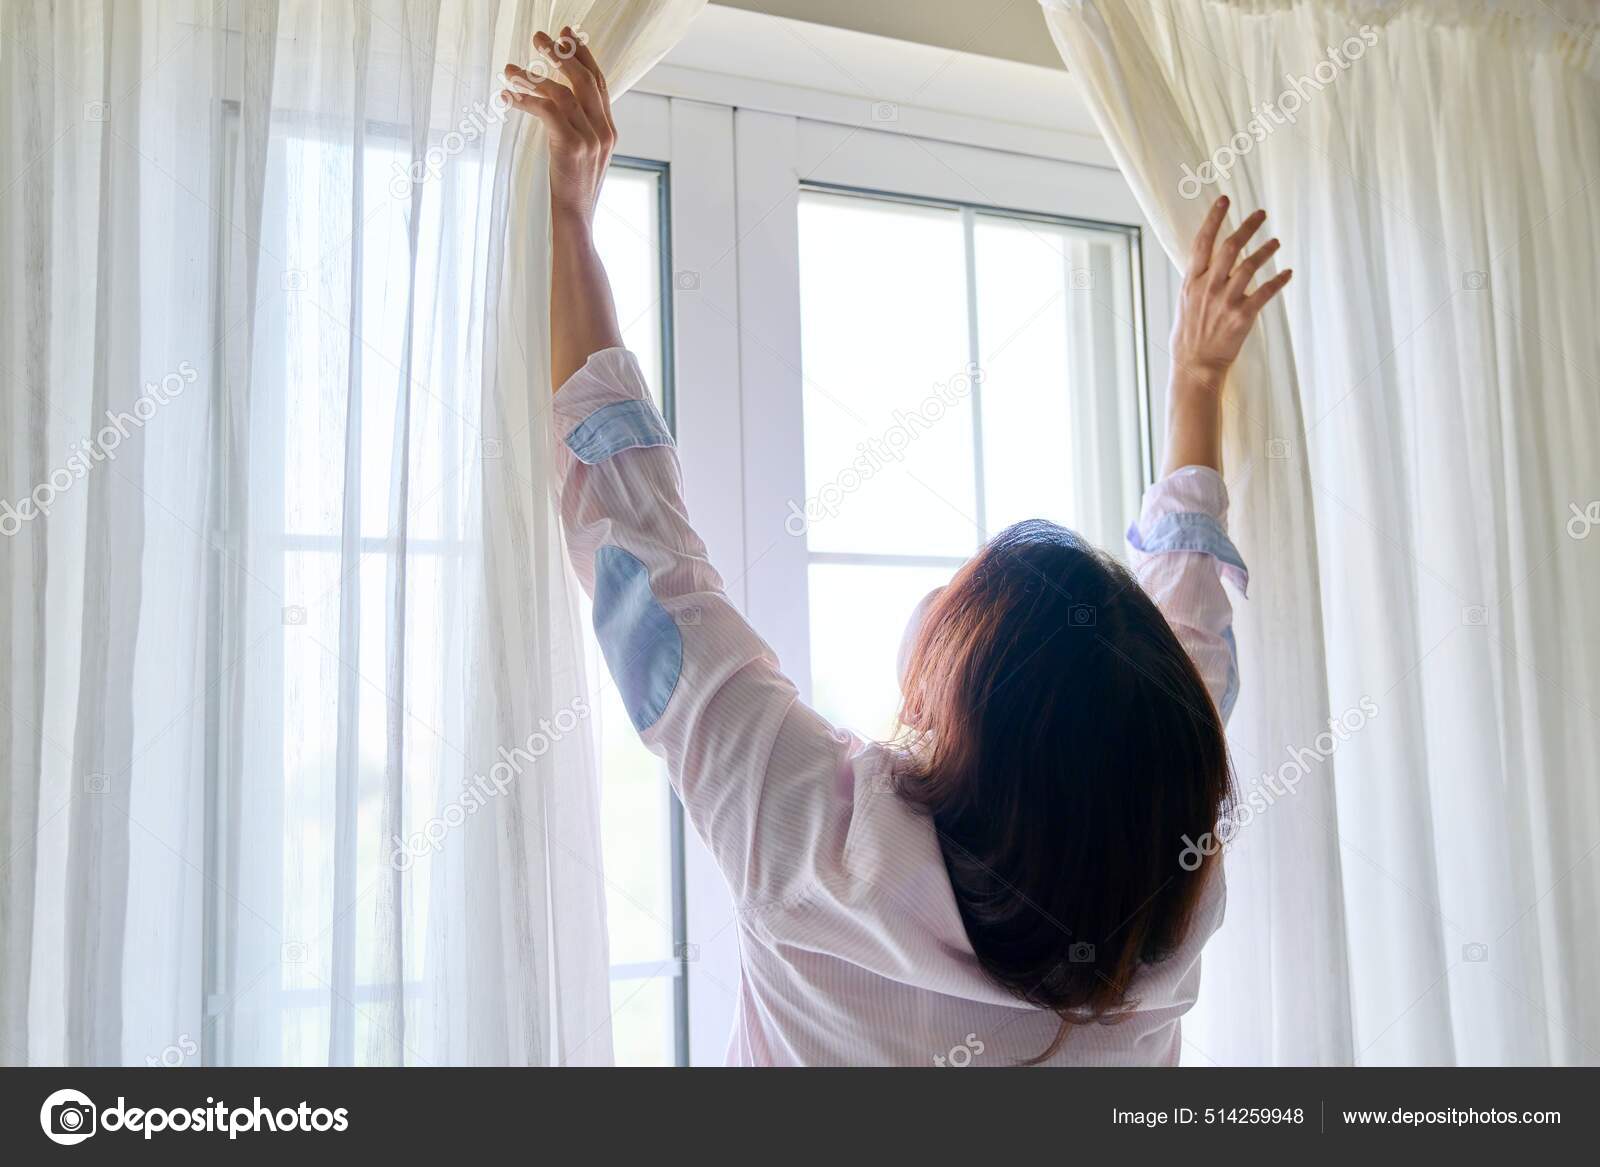 Närbild av kvinnor hand öppna och stänga ljus genomskinliga gardiner —  Stockfotografi © Valerii_Honcharuk #514259948